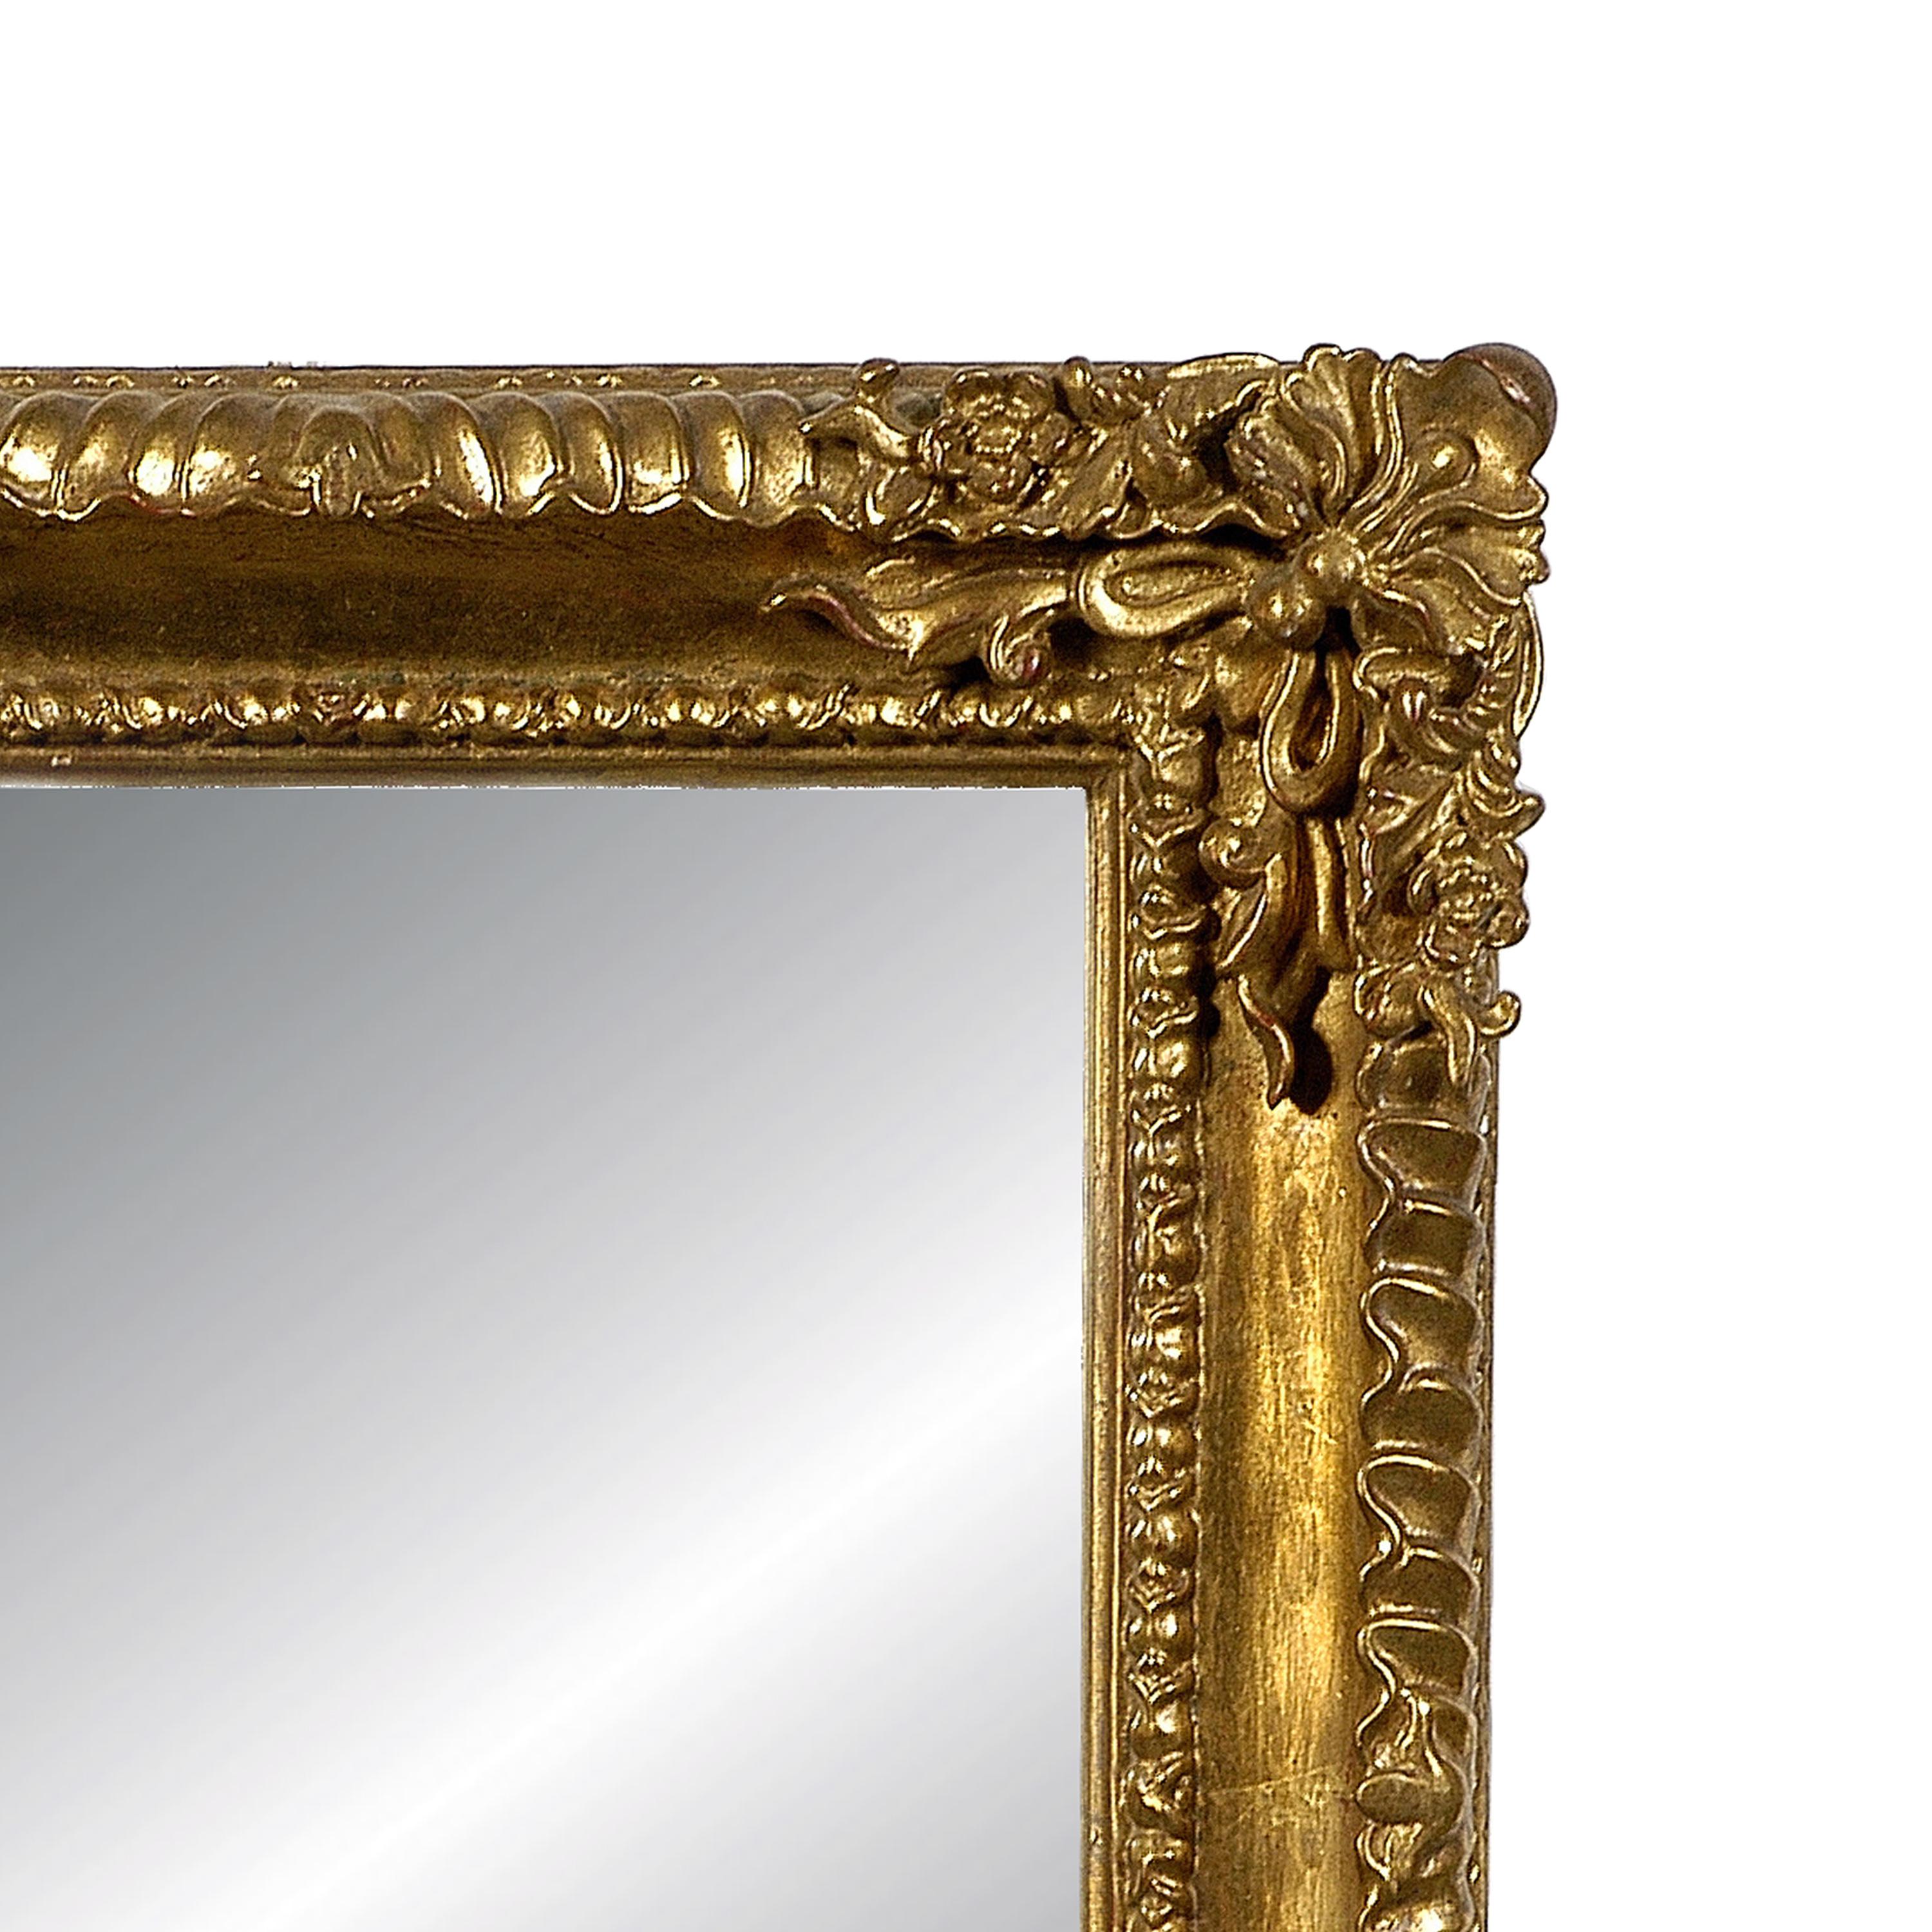 Miroir rectangulaire néoclassique Empire fabriqué à la main. Structure rectangulaire en bois sculpté à la main avec finition en feuille d'or, Espagne, 1970.